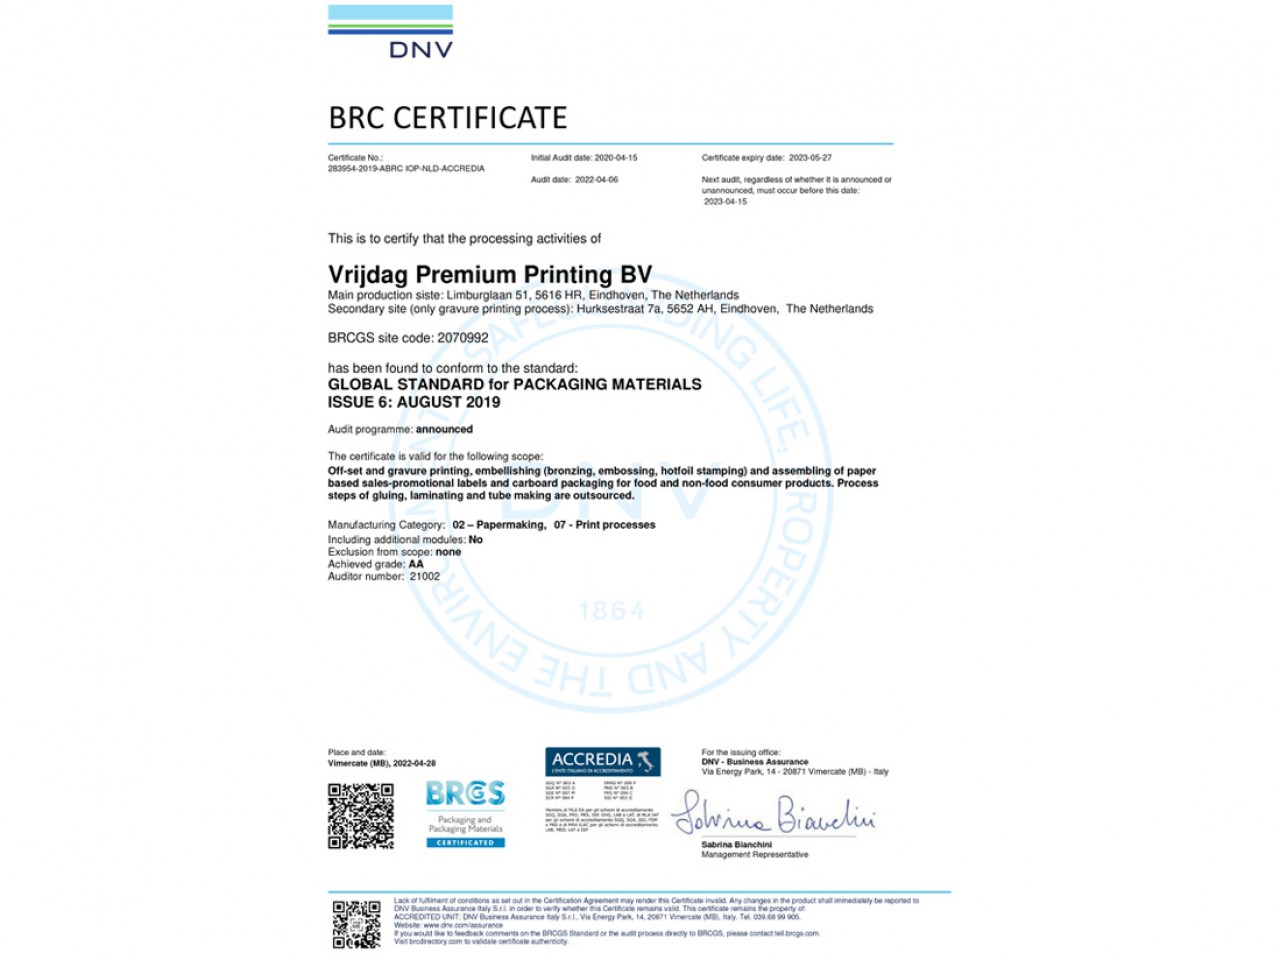 Vrijdag Premium Printing Certificaat - BRCGS Packaging Materials, Issue 6 - Achieved Grade: AA